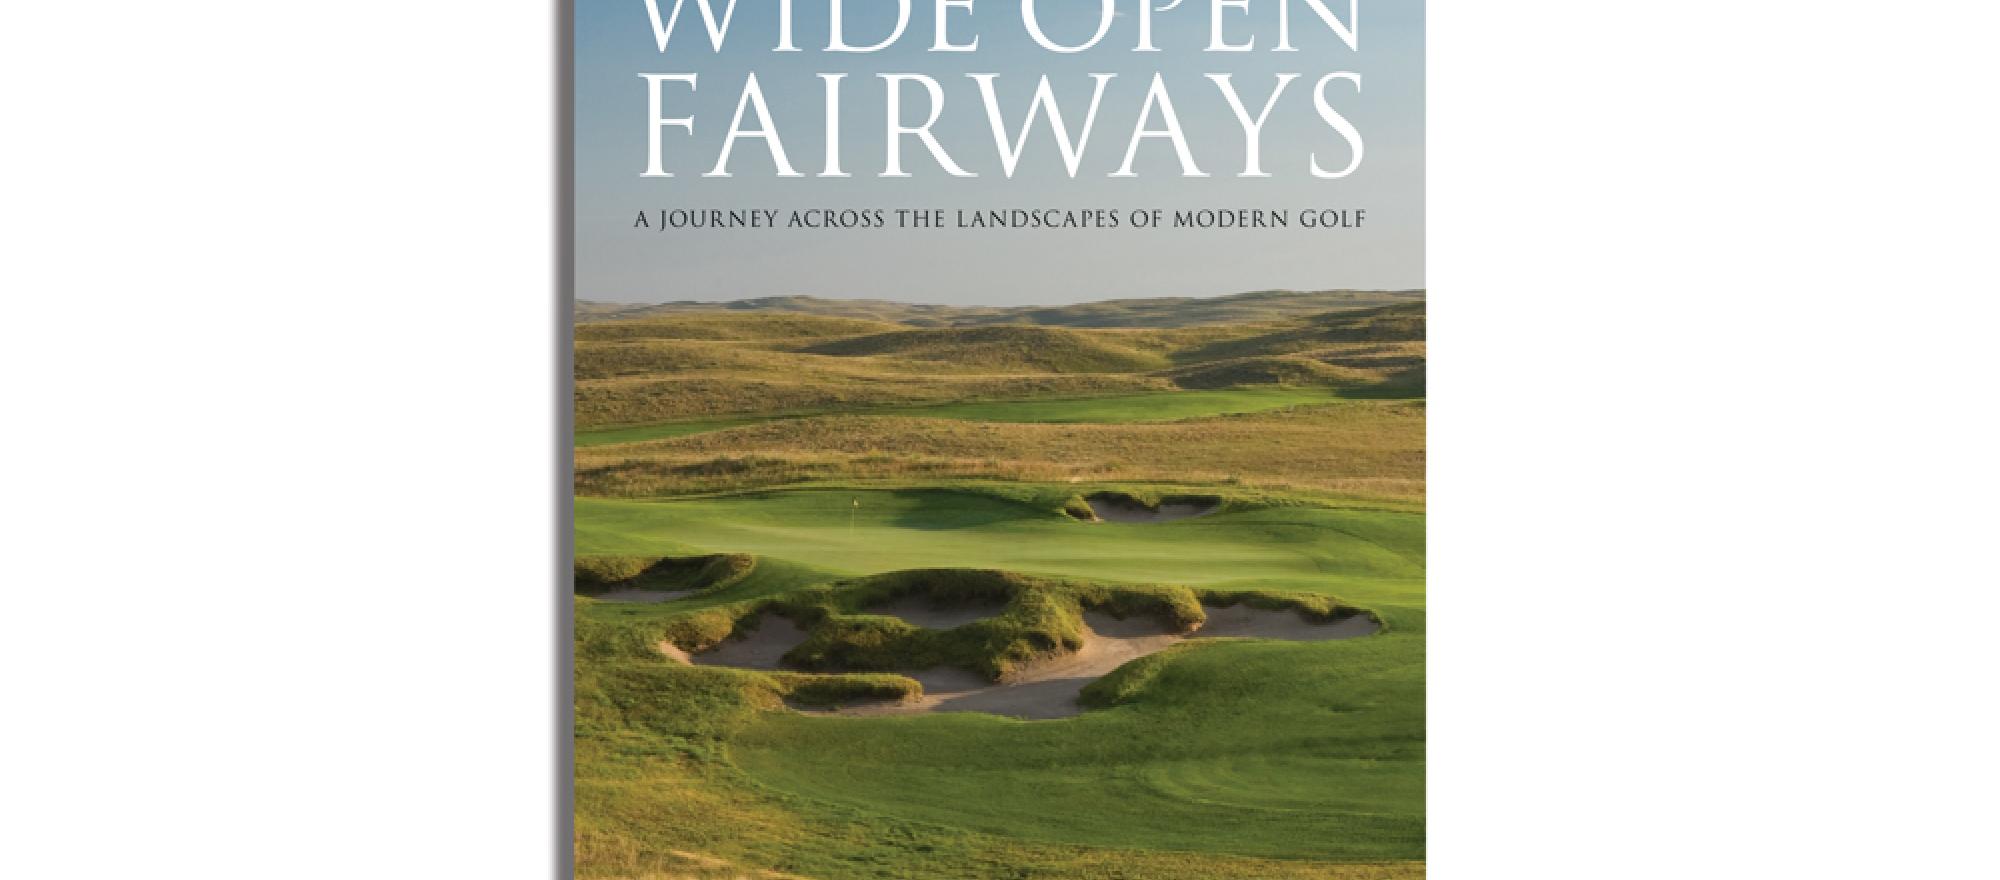 Wide Open Fairways by Bradley S. Klein